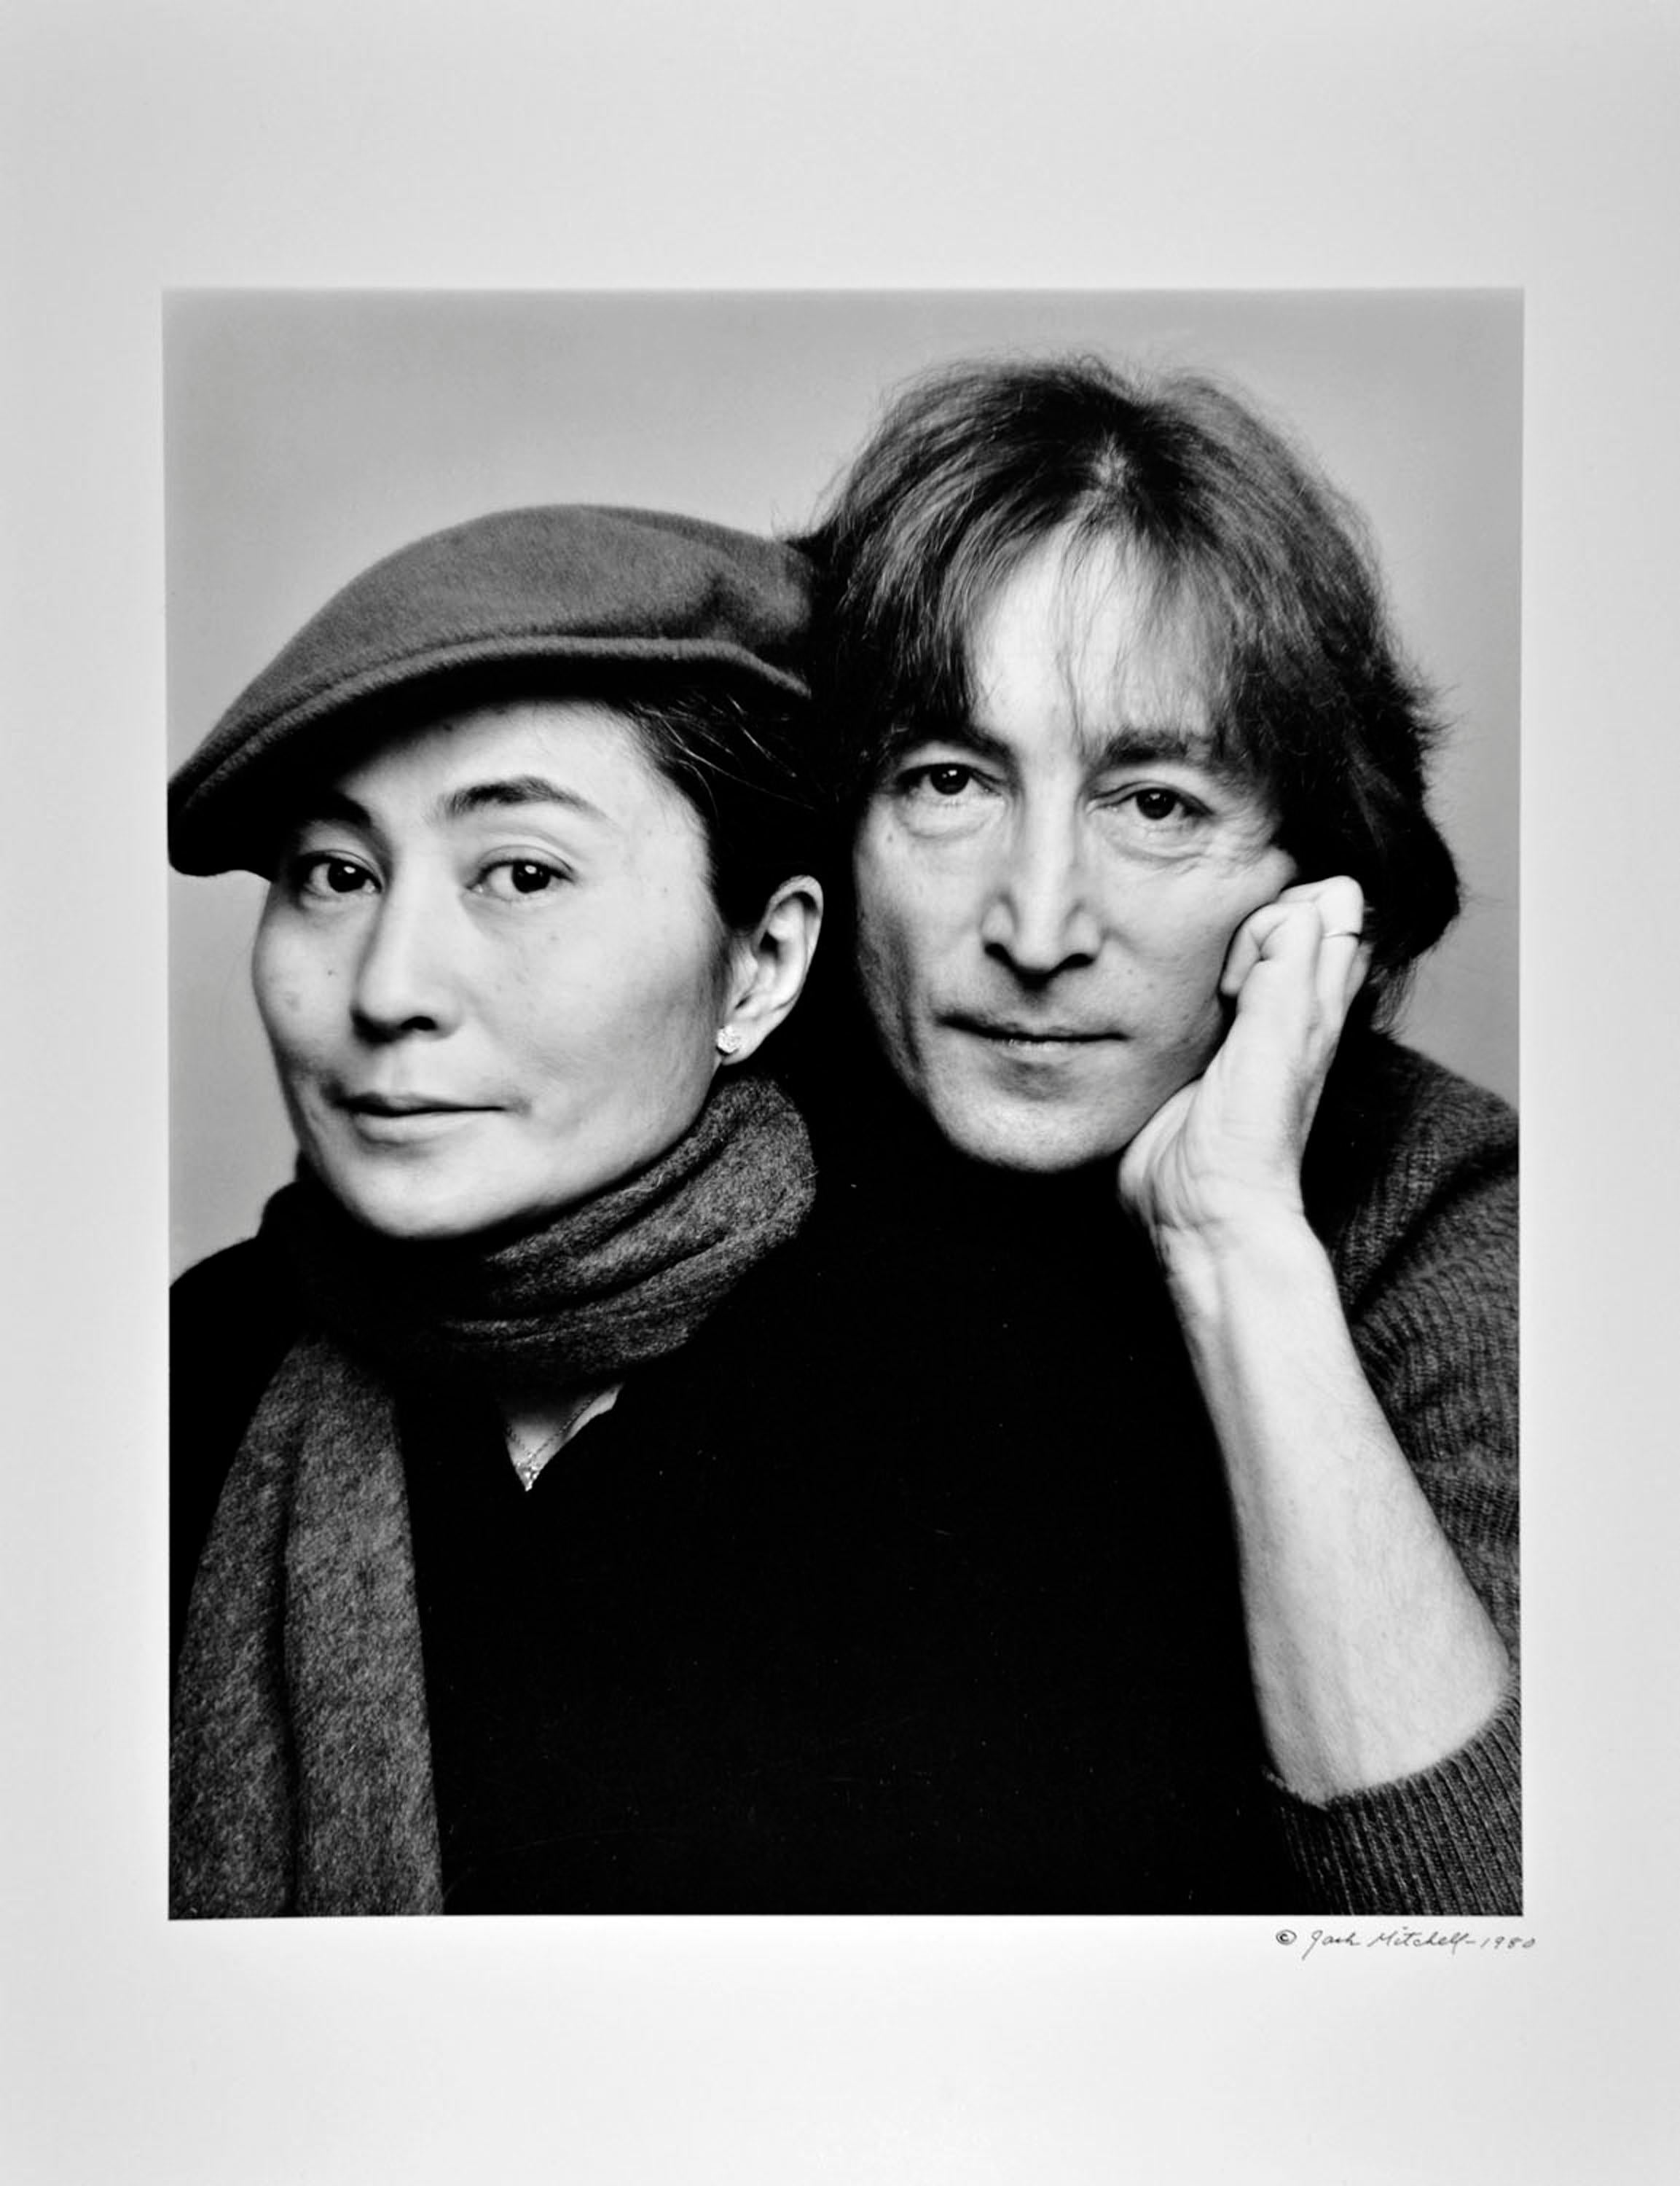 photographie vintage à la gélatine d'argent de 11 x 14 pouces de John Lennon et Yoko Ono, photographiée le 2 novembre 1980, la dernière séance photo complète de la vie de Lennon. Signé par Jack Mitchell sur le recto du tirage.   Vient directement